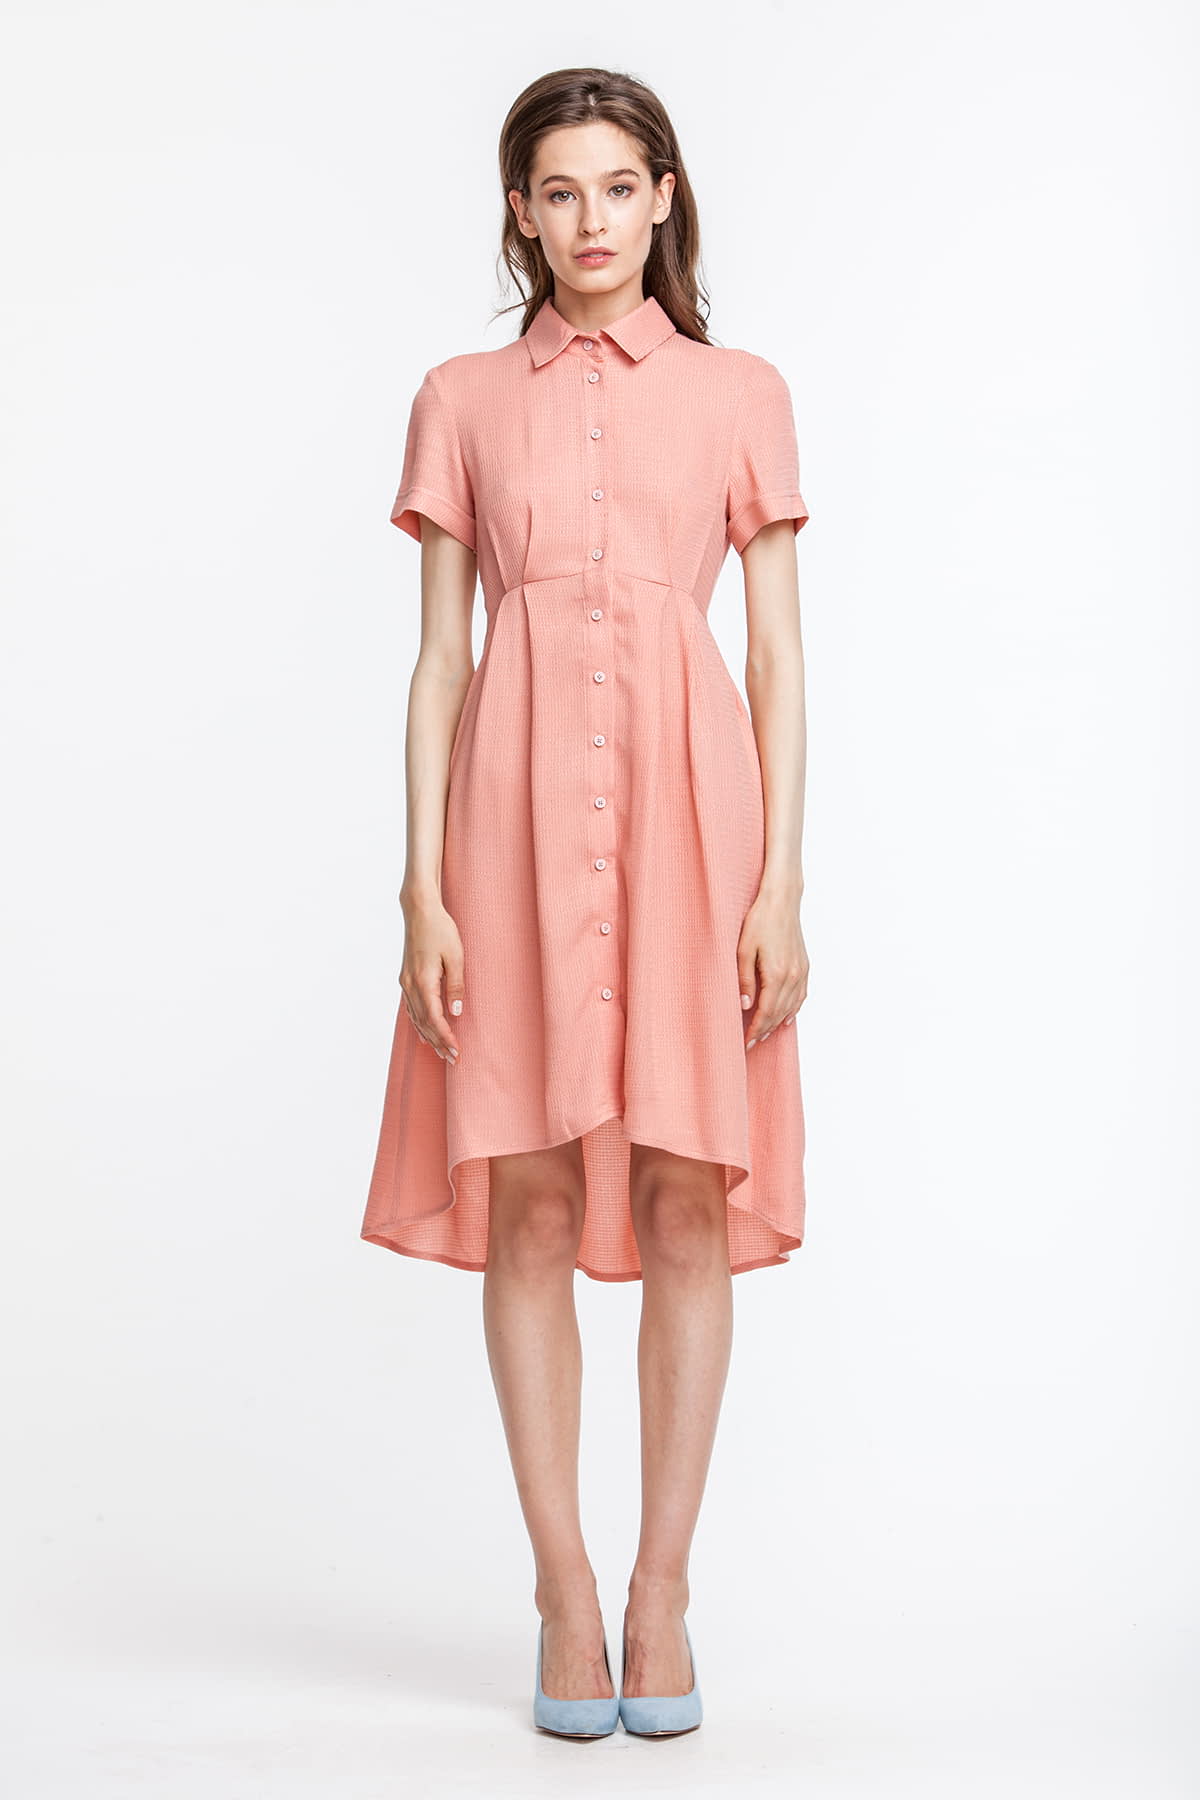 Платье персикового цвета, с рубашечным верхом, photo 1